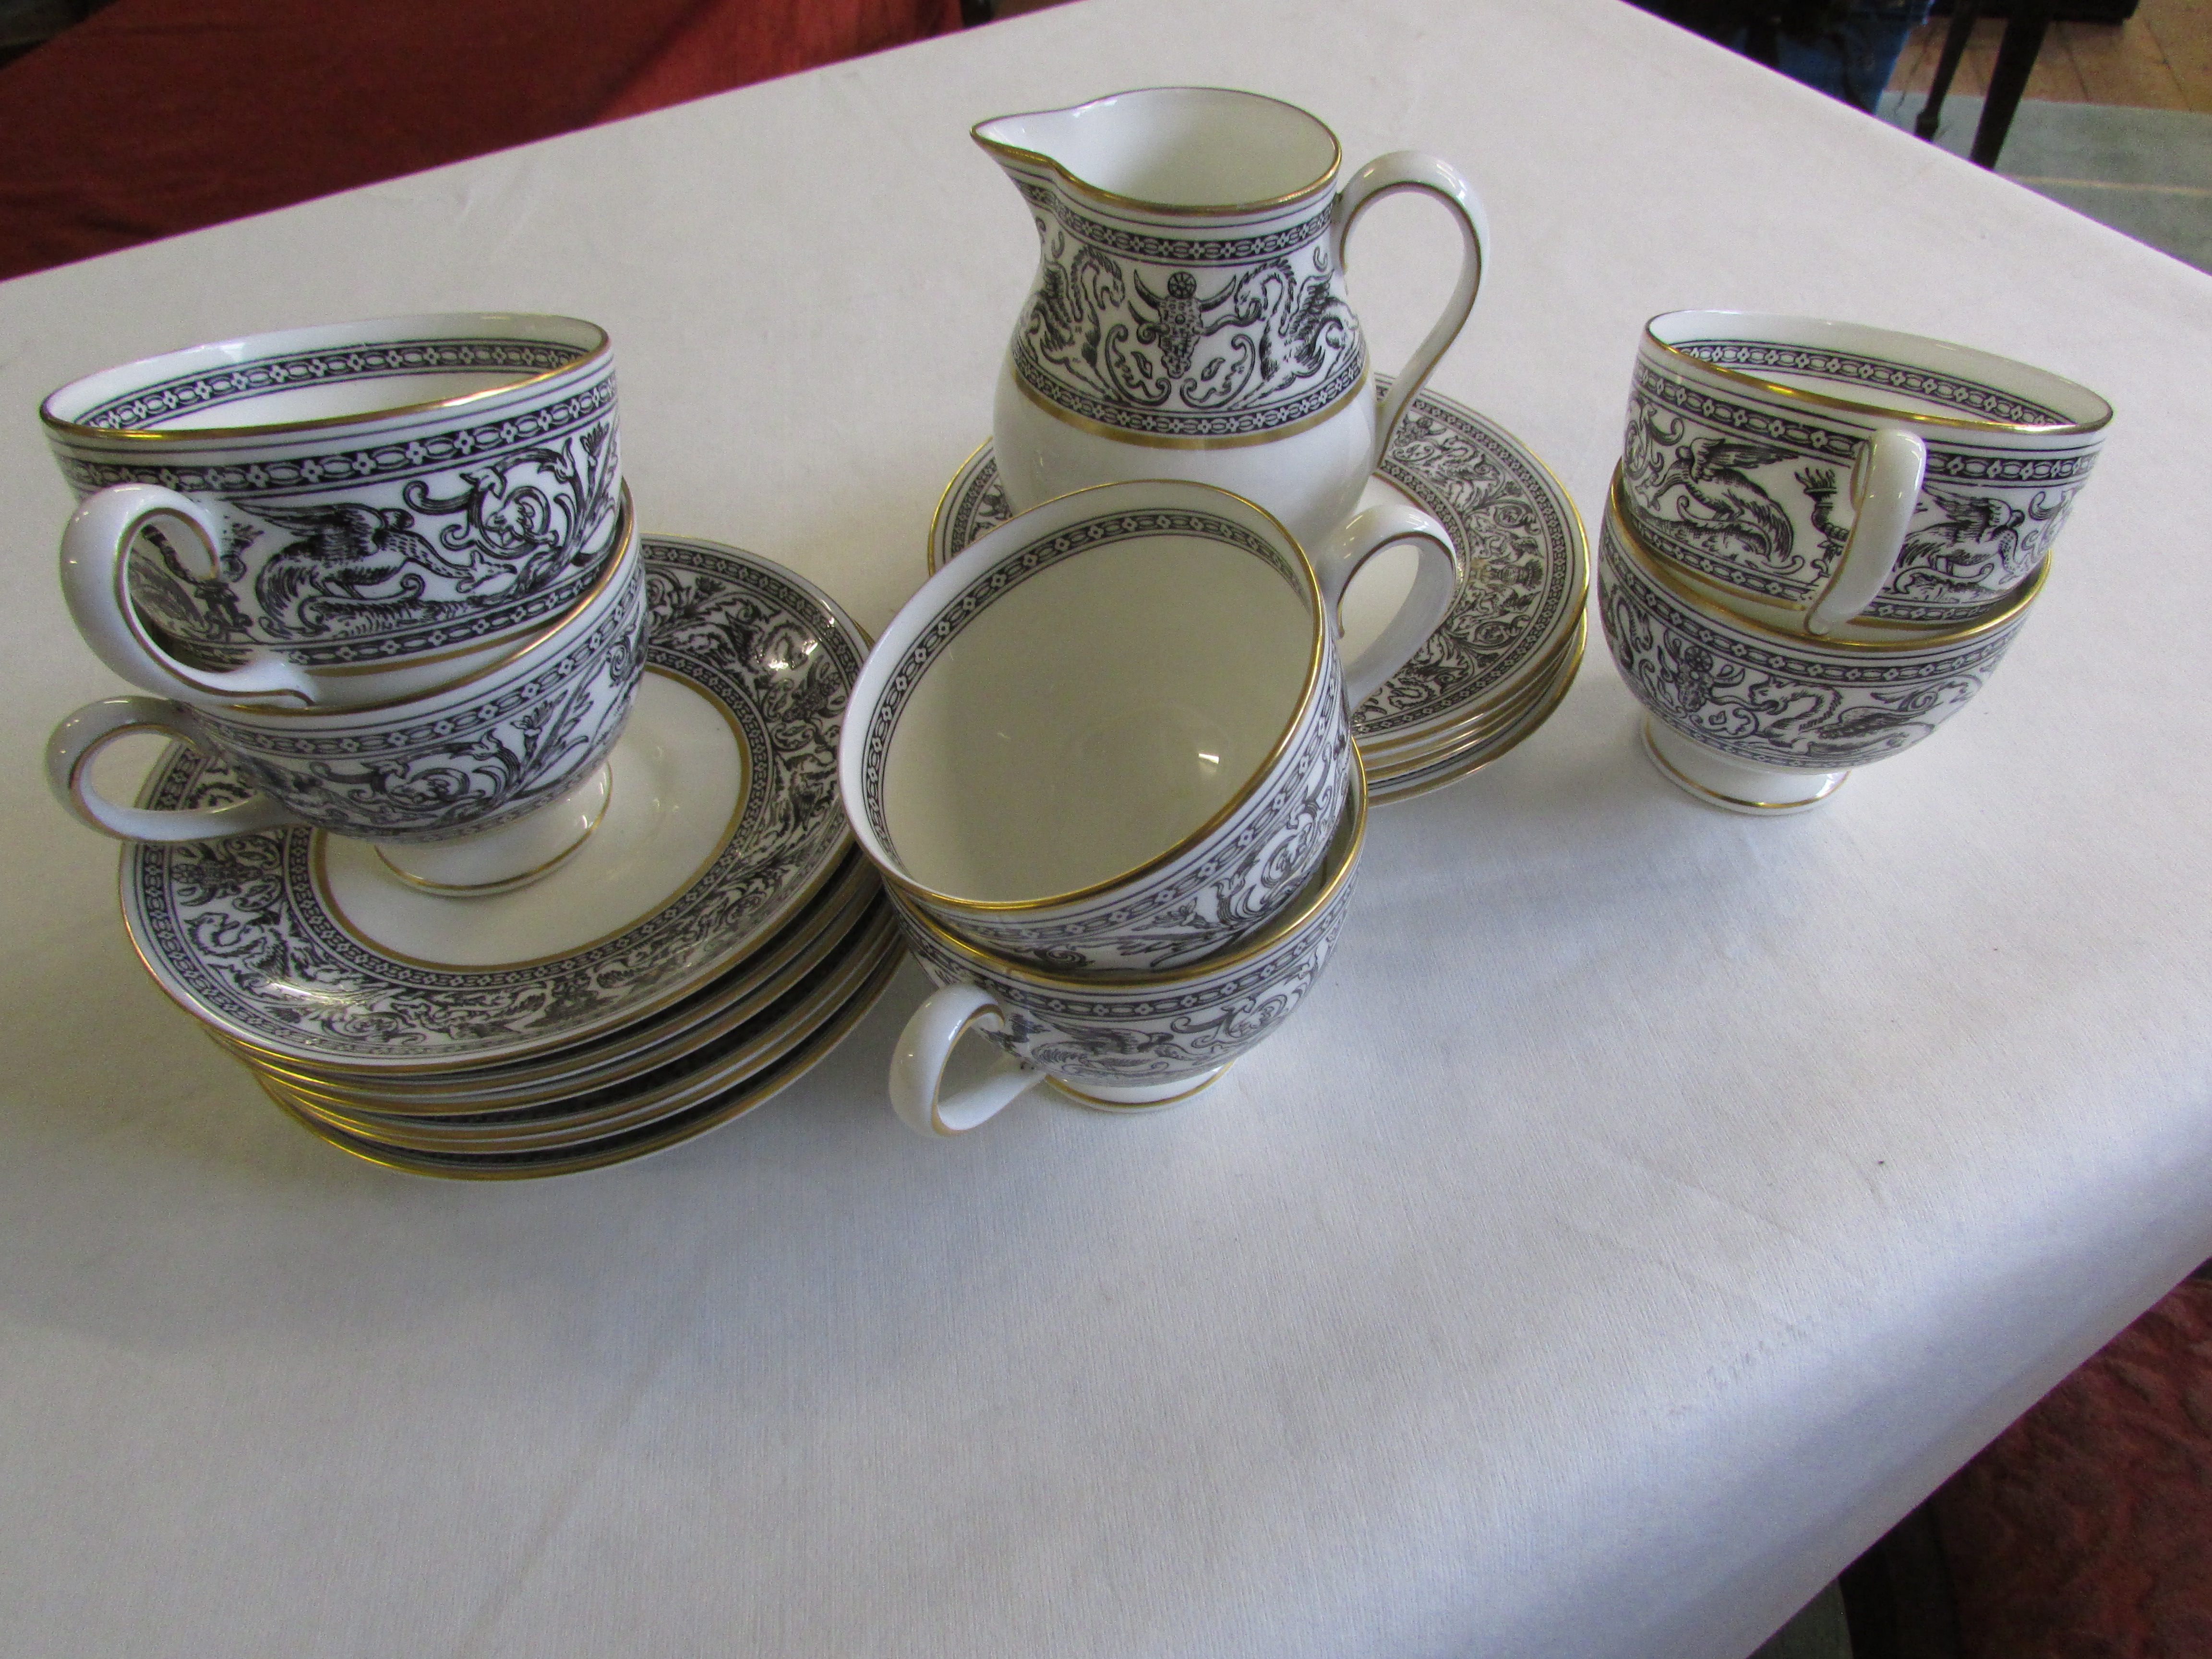 Wedgwood 'Florentine; bone china teaware